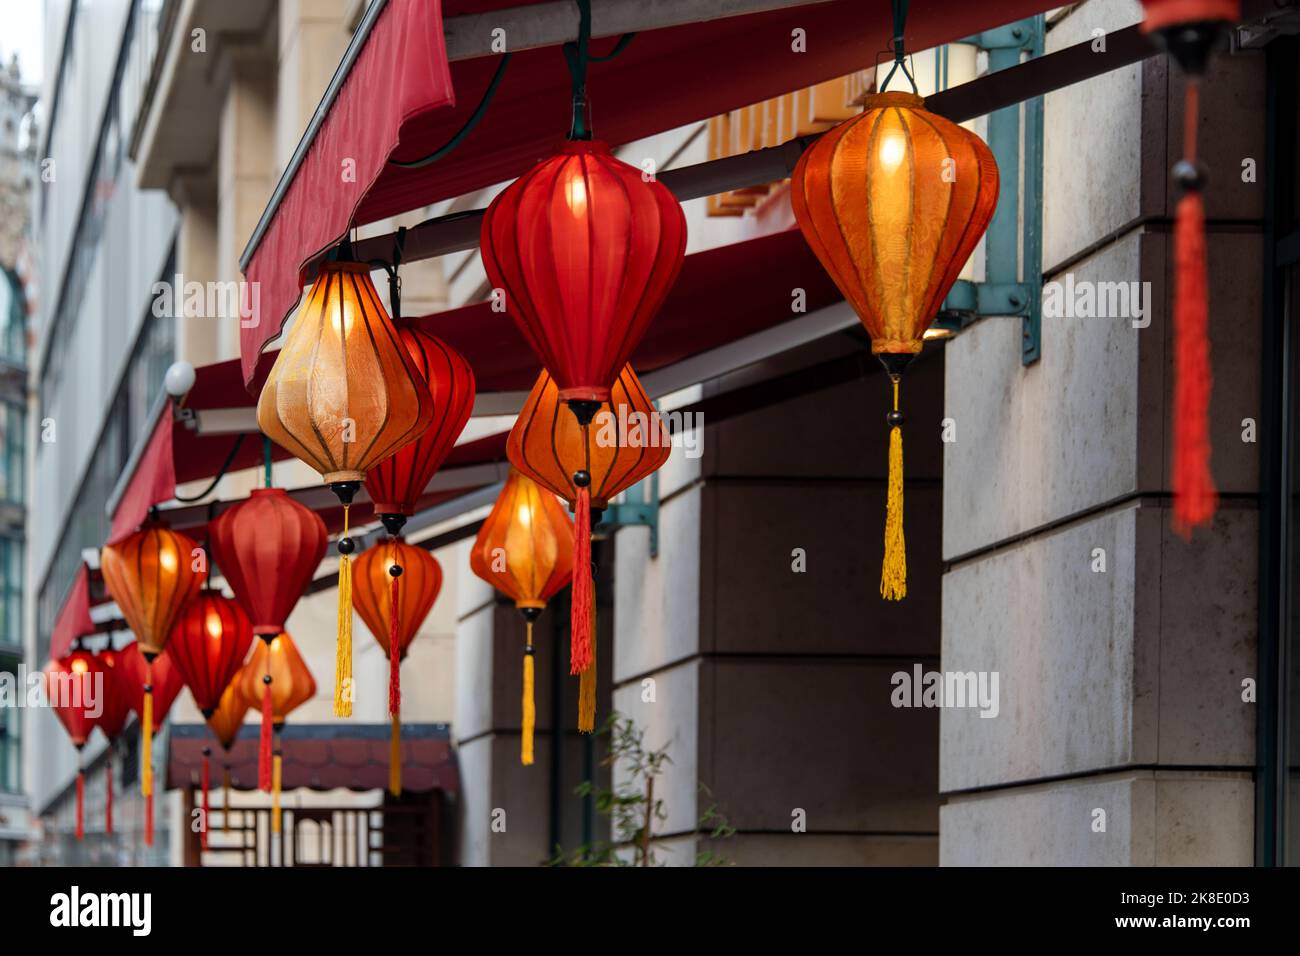 Lanterne cinesi rosse che pendono all'aperto come ghirlande. Lanterne tradizionali asiatiche decorative e luminose per ristoranti, caffè o case. Simboli di ricchezza, Fam Foto Stock